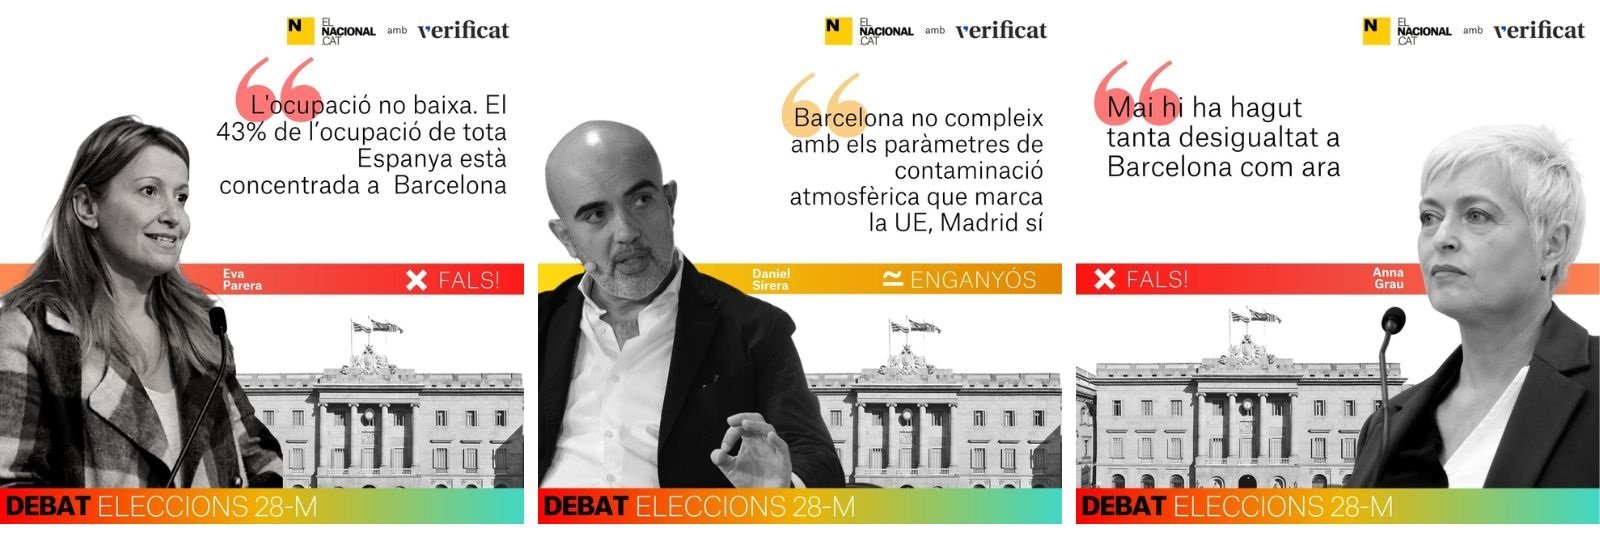 Verificacions del debat de Barcelona de eleccions municipals ElNacional.cat i Verificat